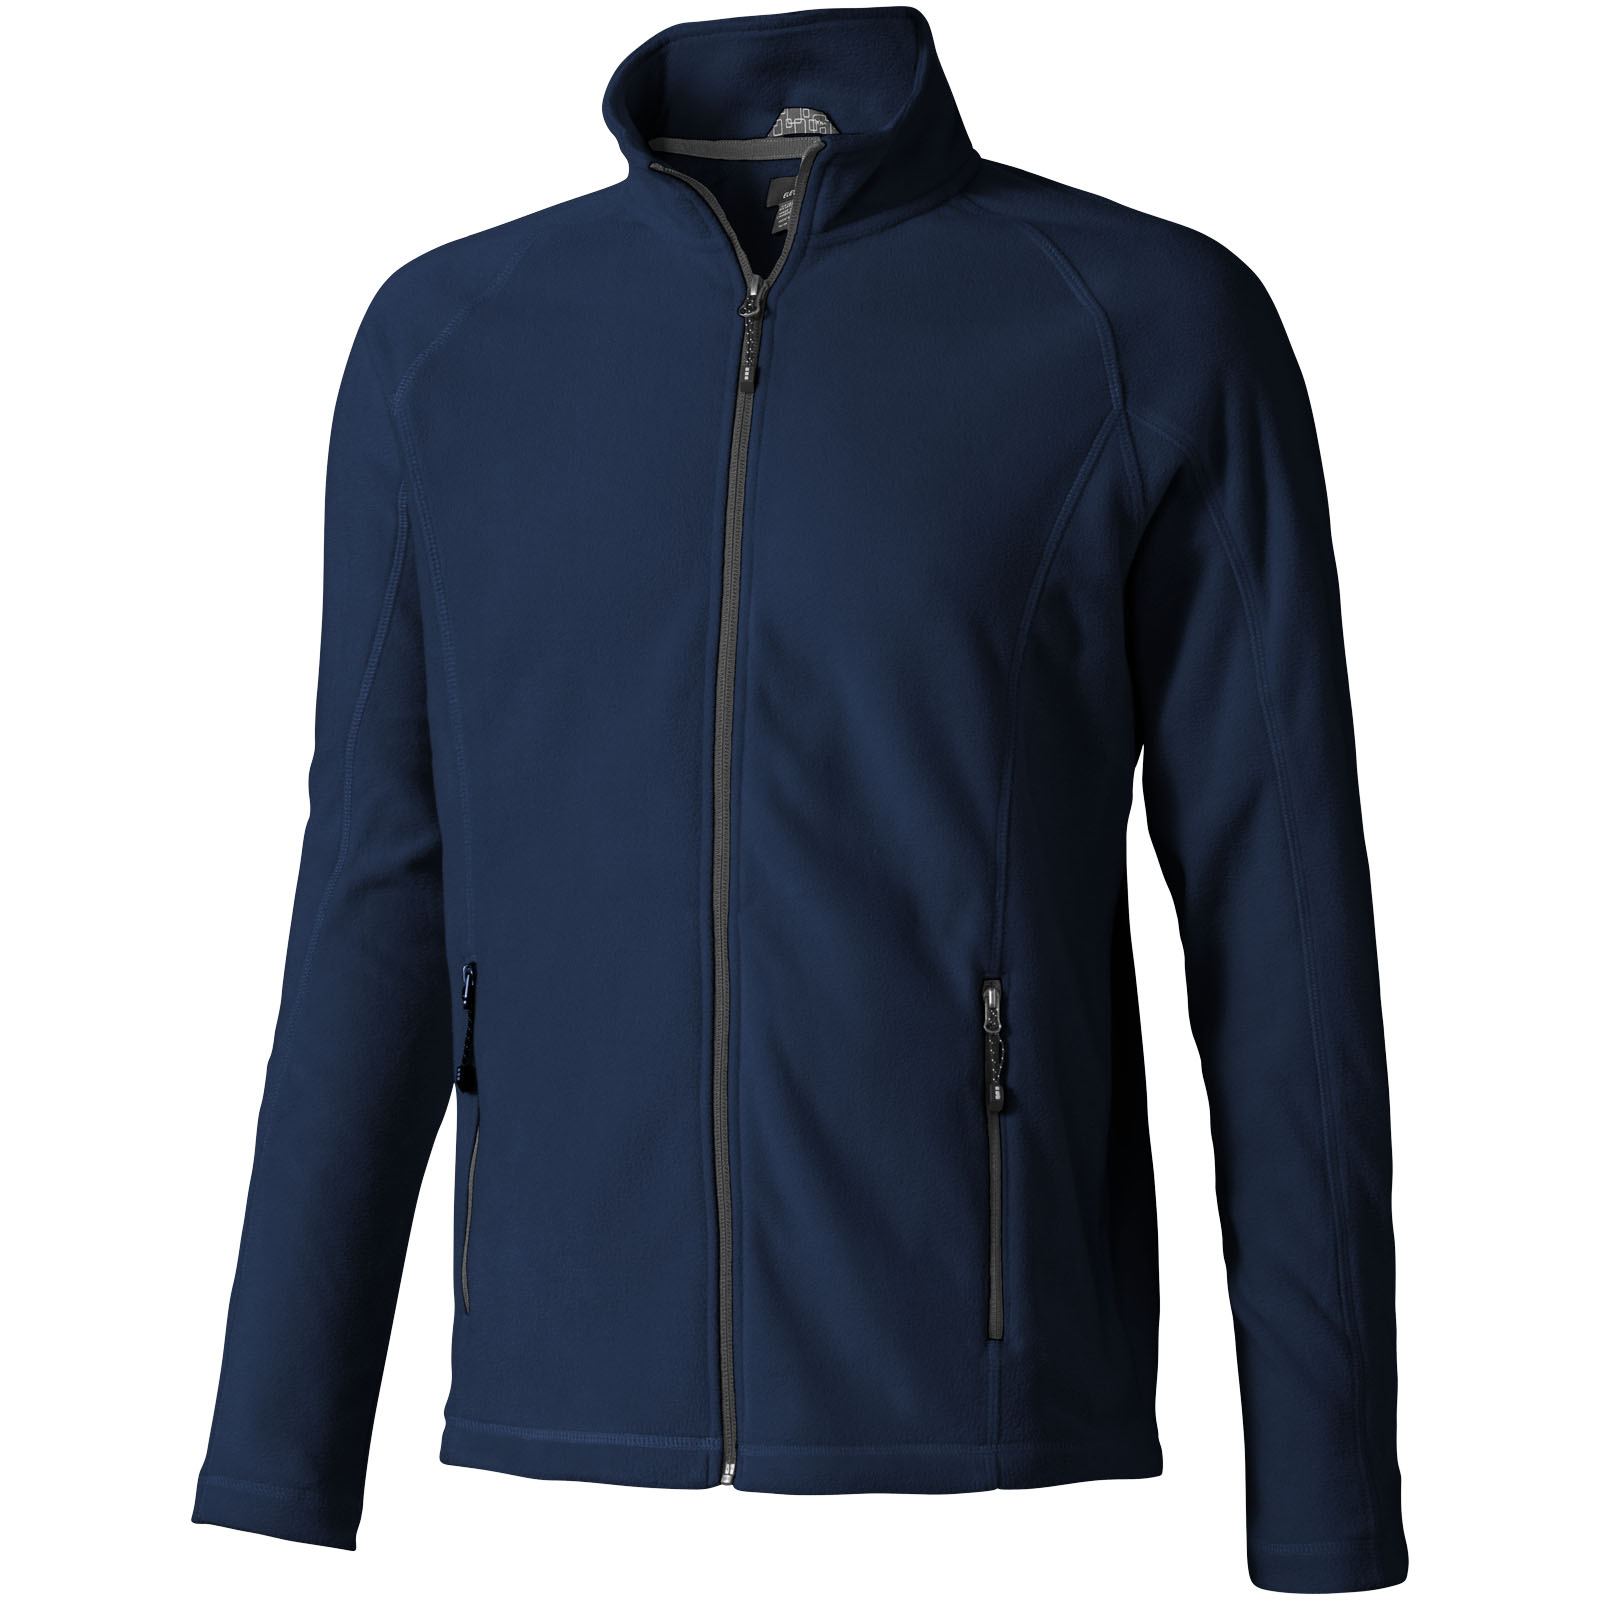 Fleece - Rixford men's full zip fleece jacket